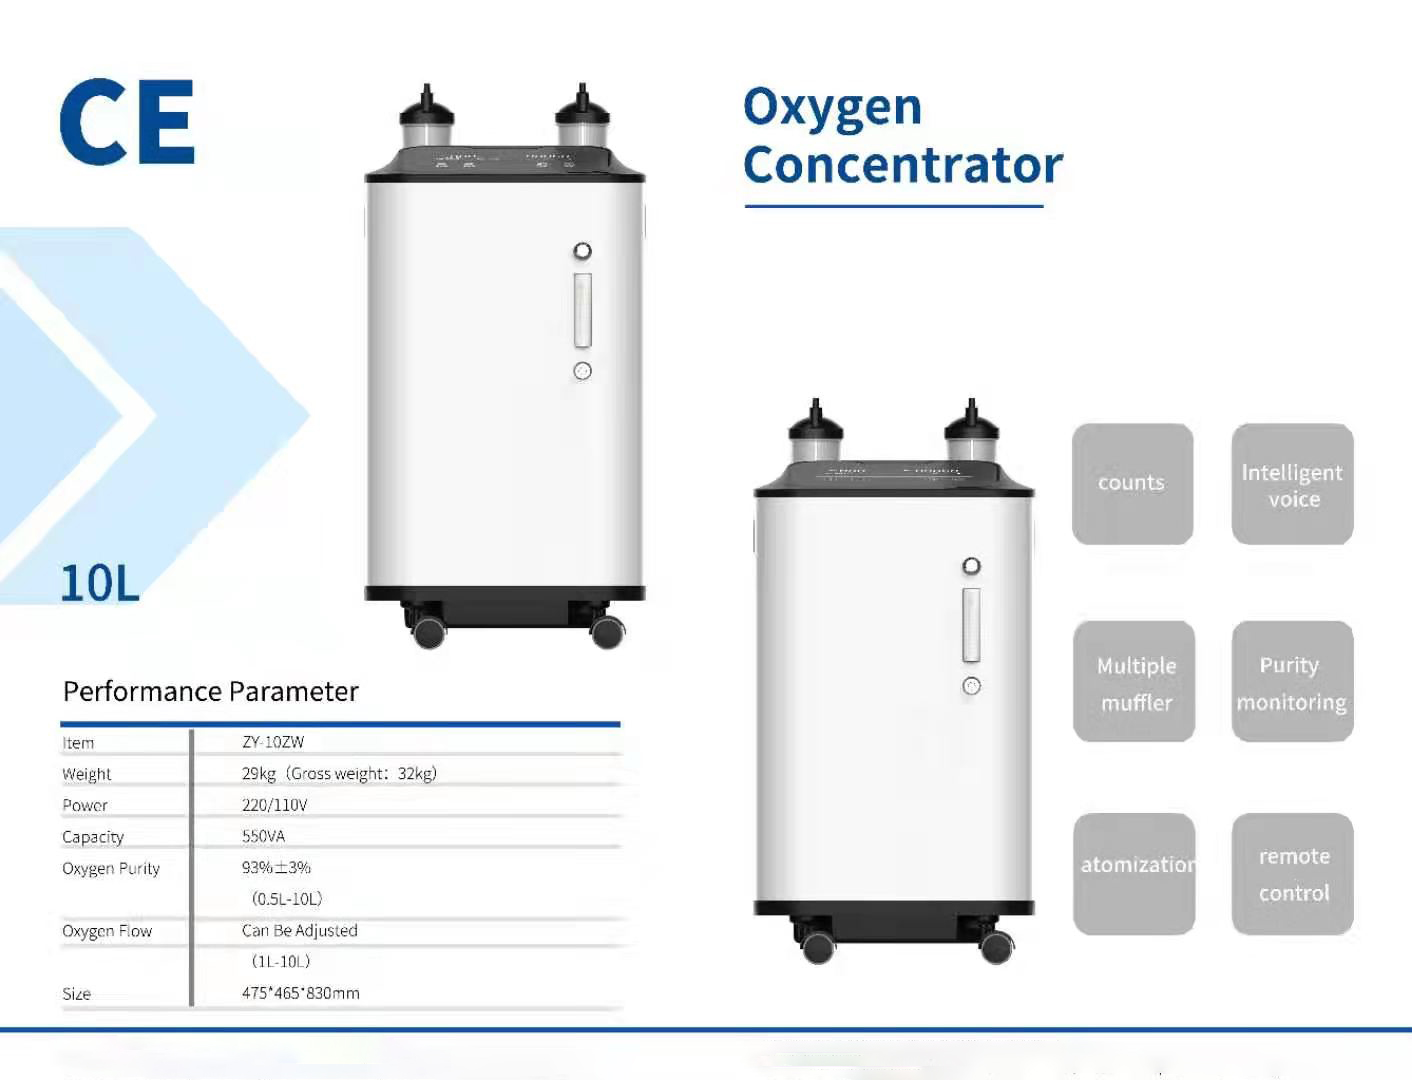 por que o cliente escolhe o concentrador de oxigênio da marca HICO